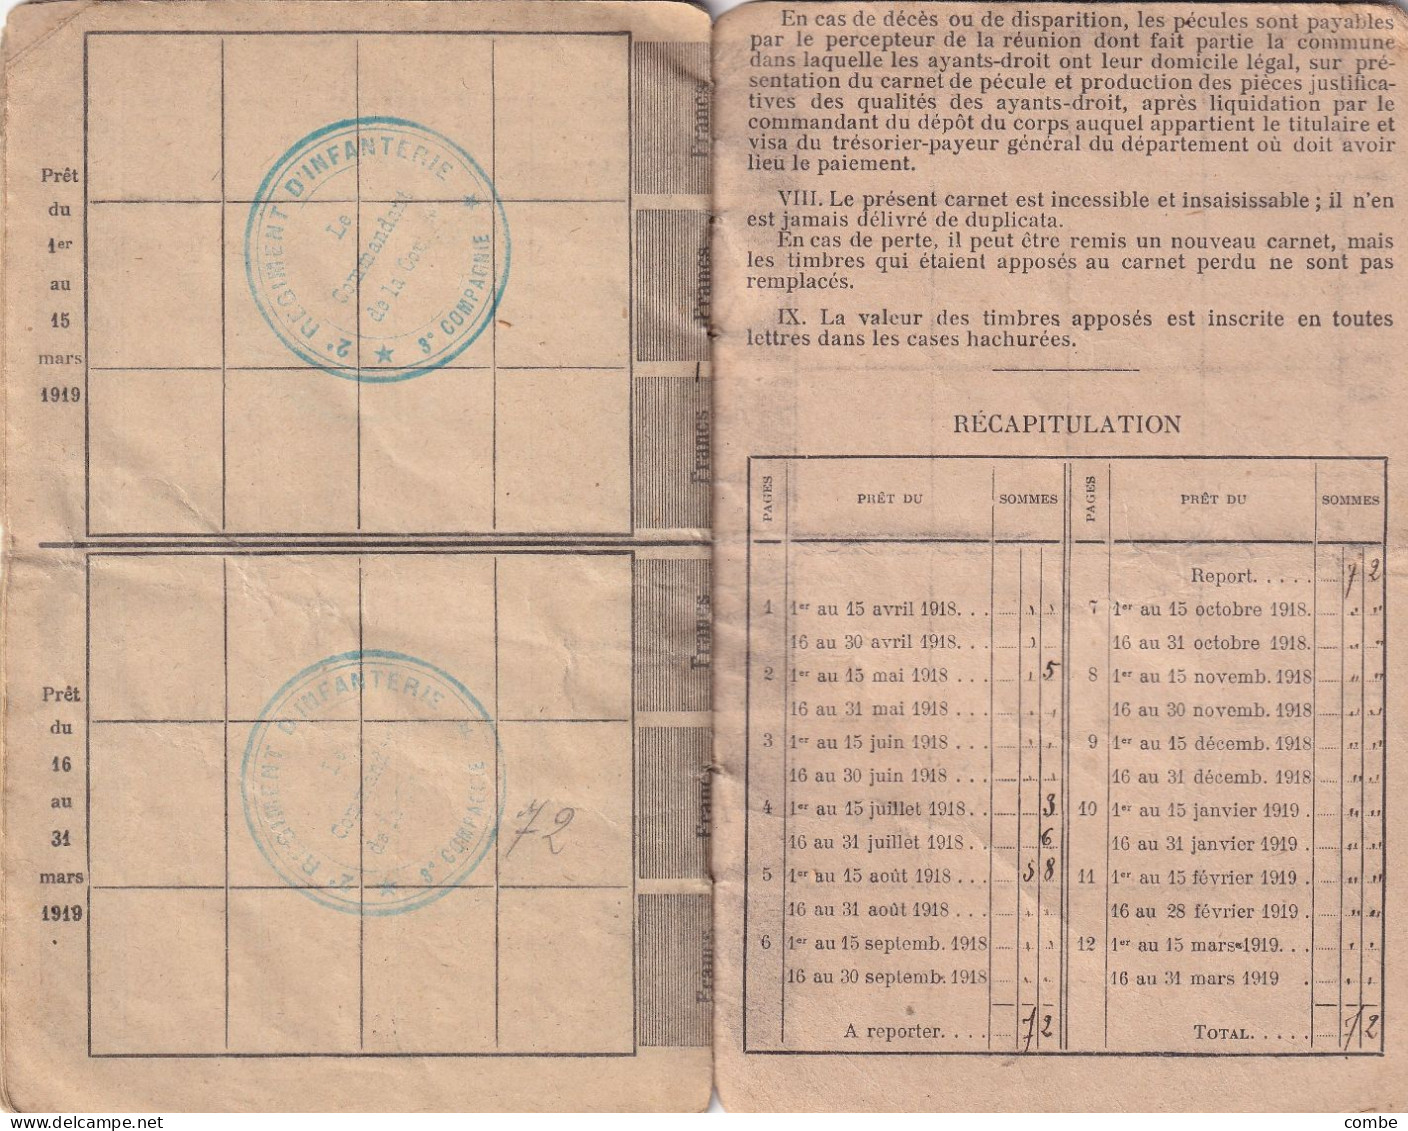 CARNET MILITAIRE DE PECULE COMPLET AVEC SES TIMBRES FISCAUX. CLASSE 1917. TAMBOUR